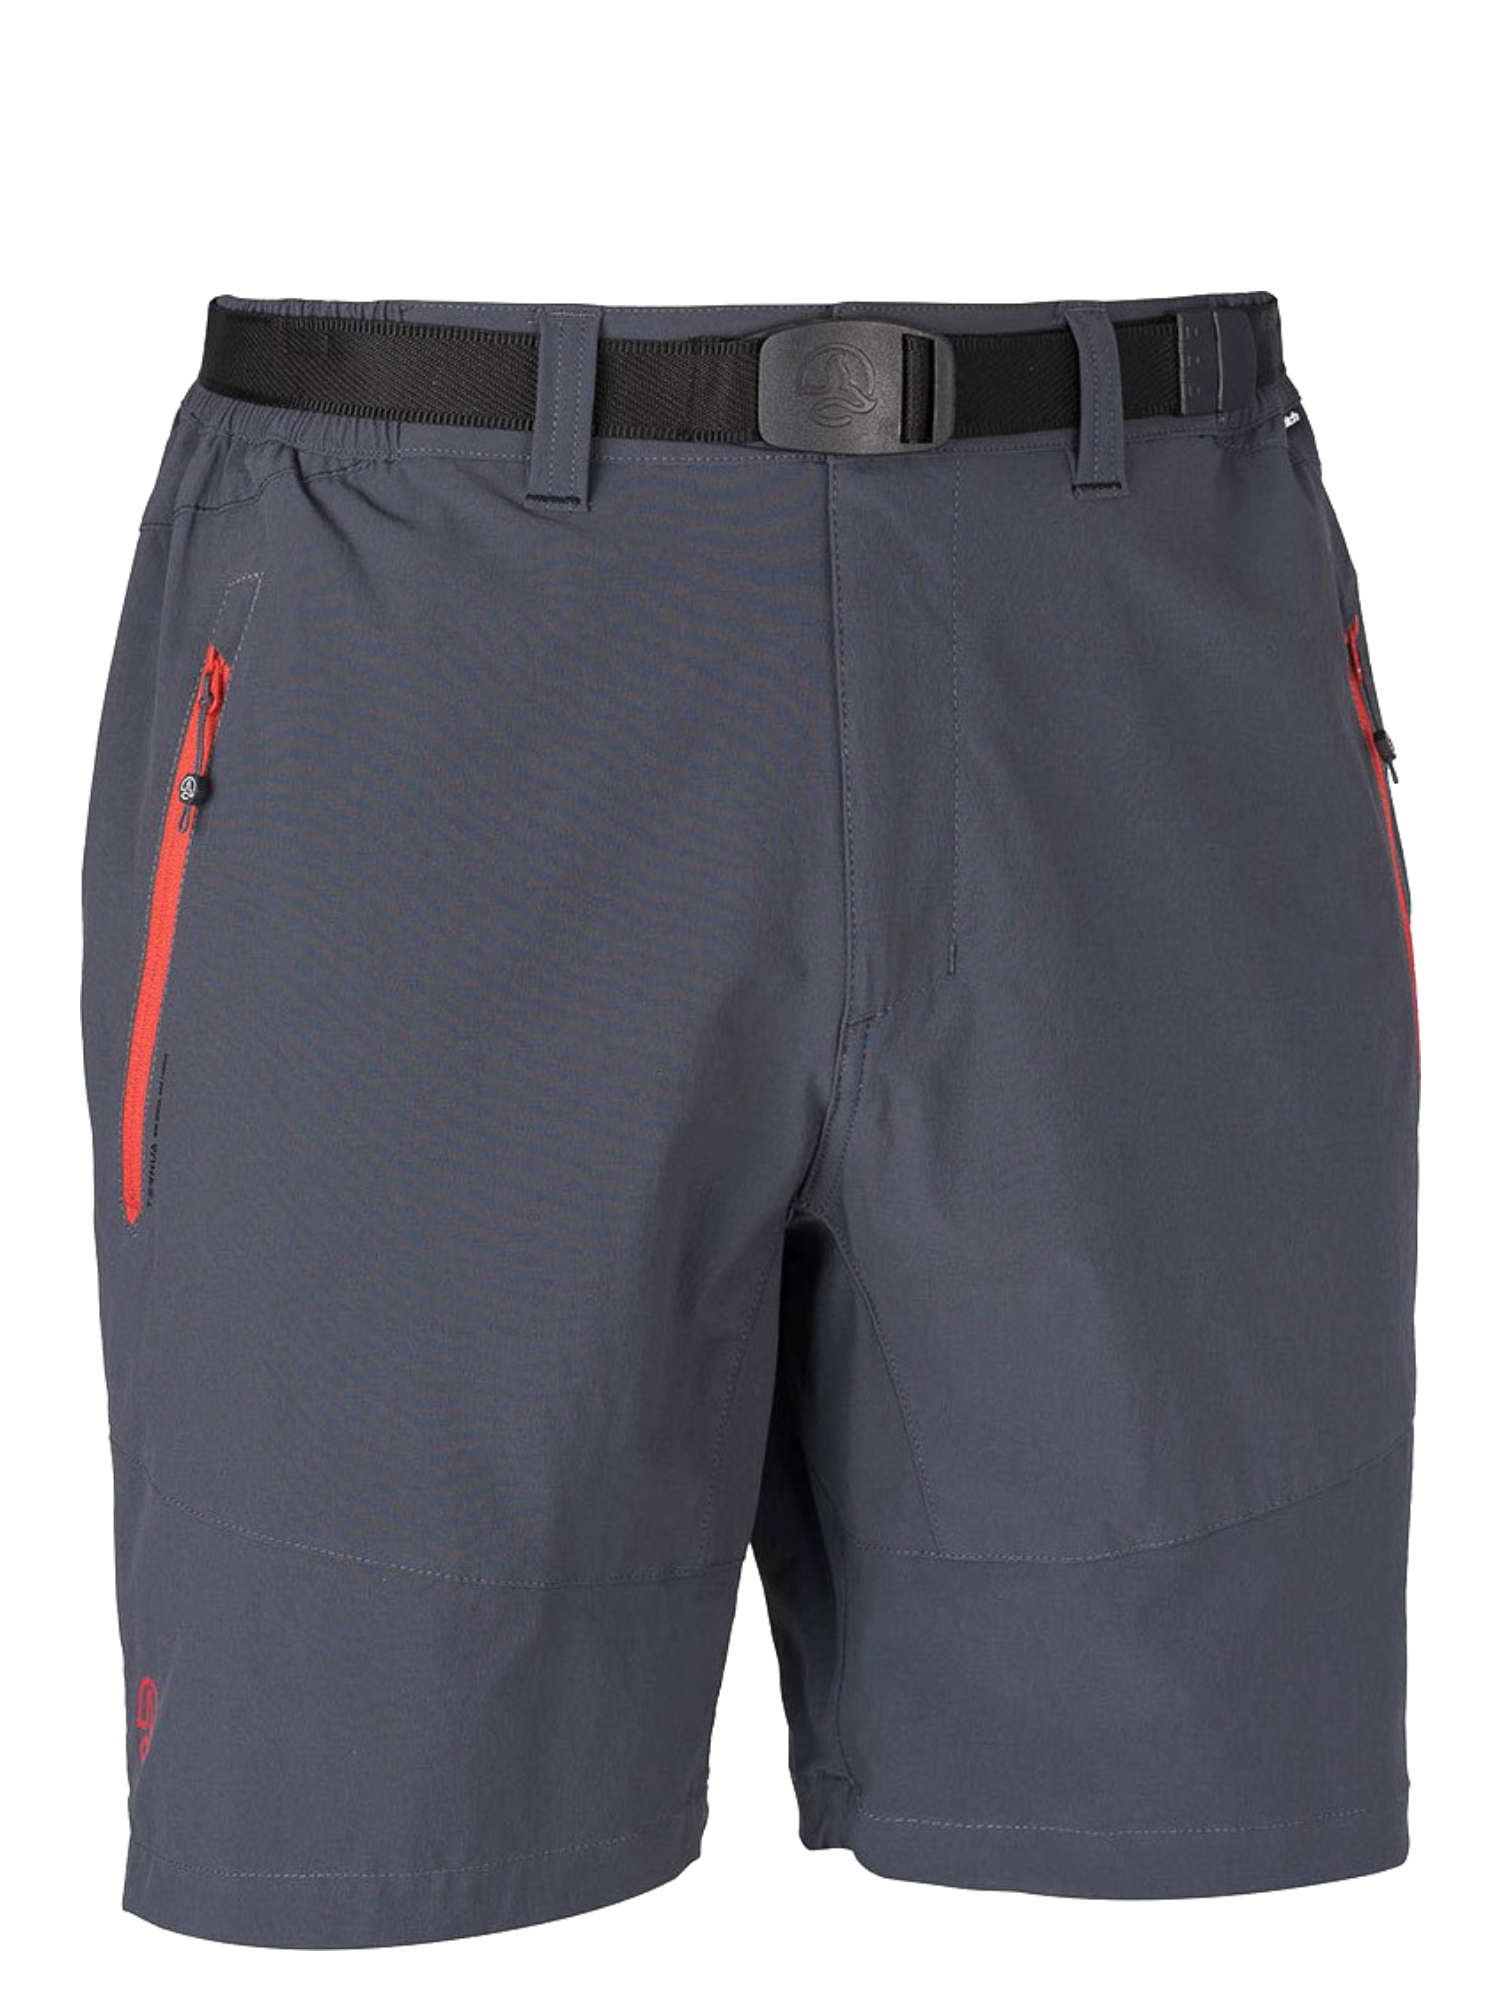 Спортивные шорты мужские Ternua Friz Sht M серые L